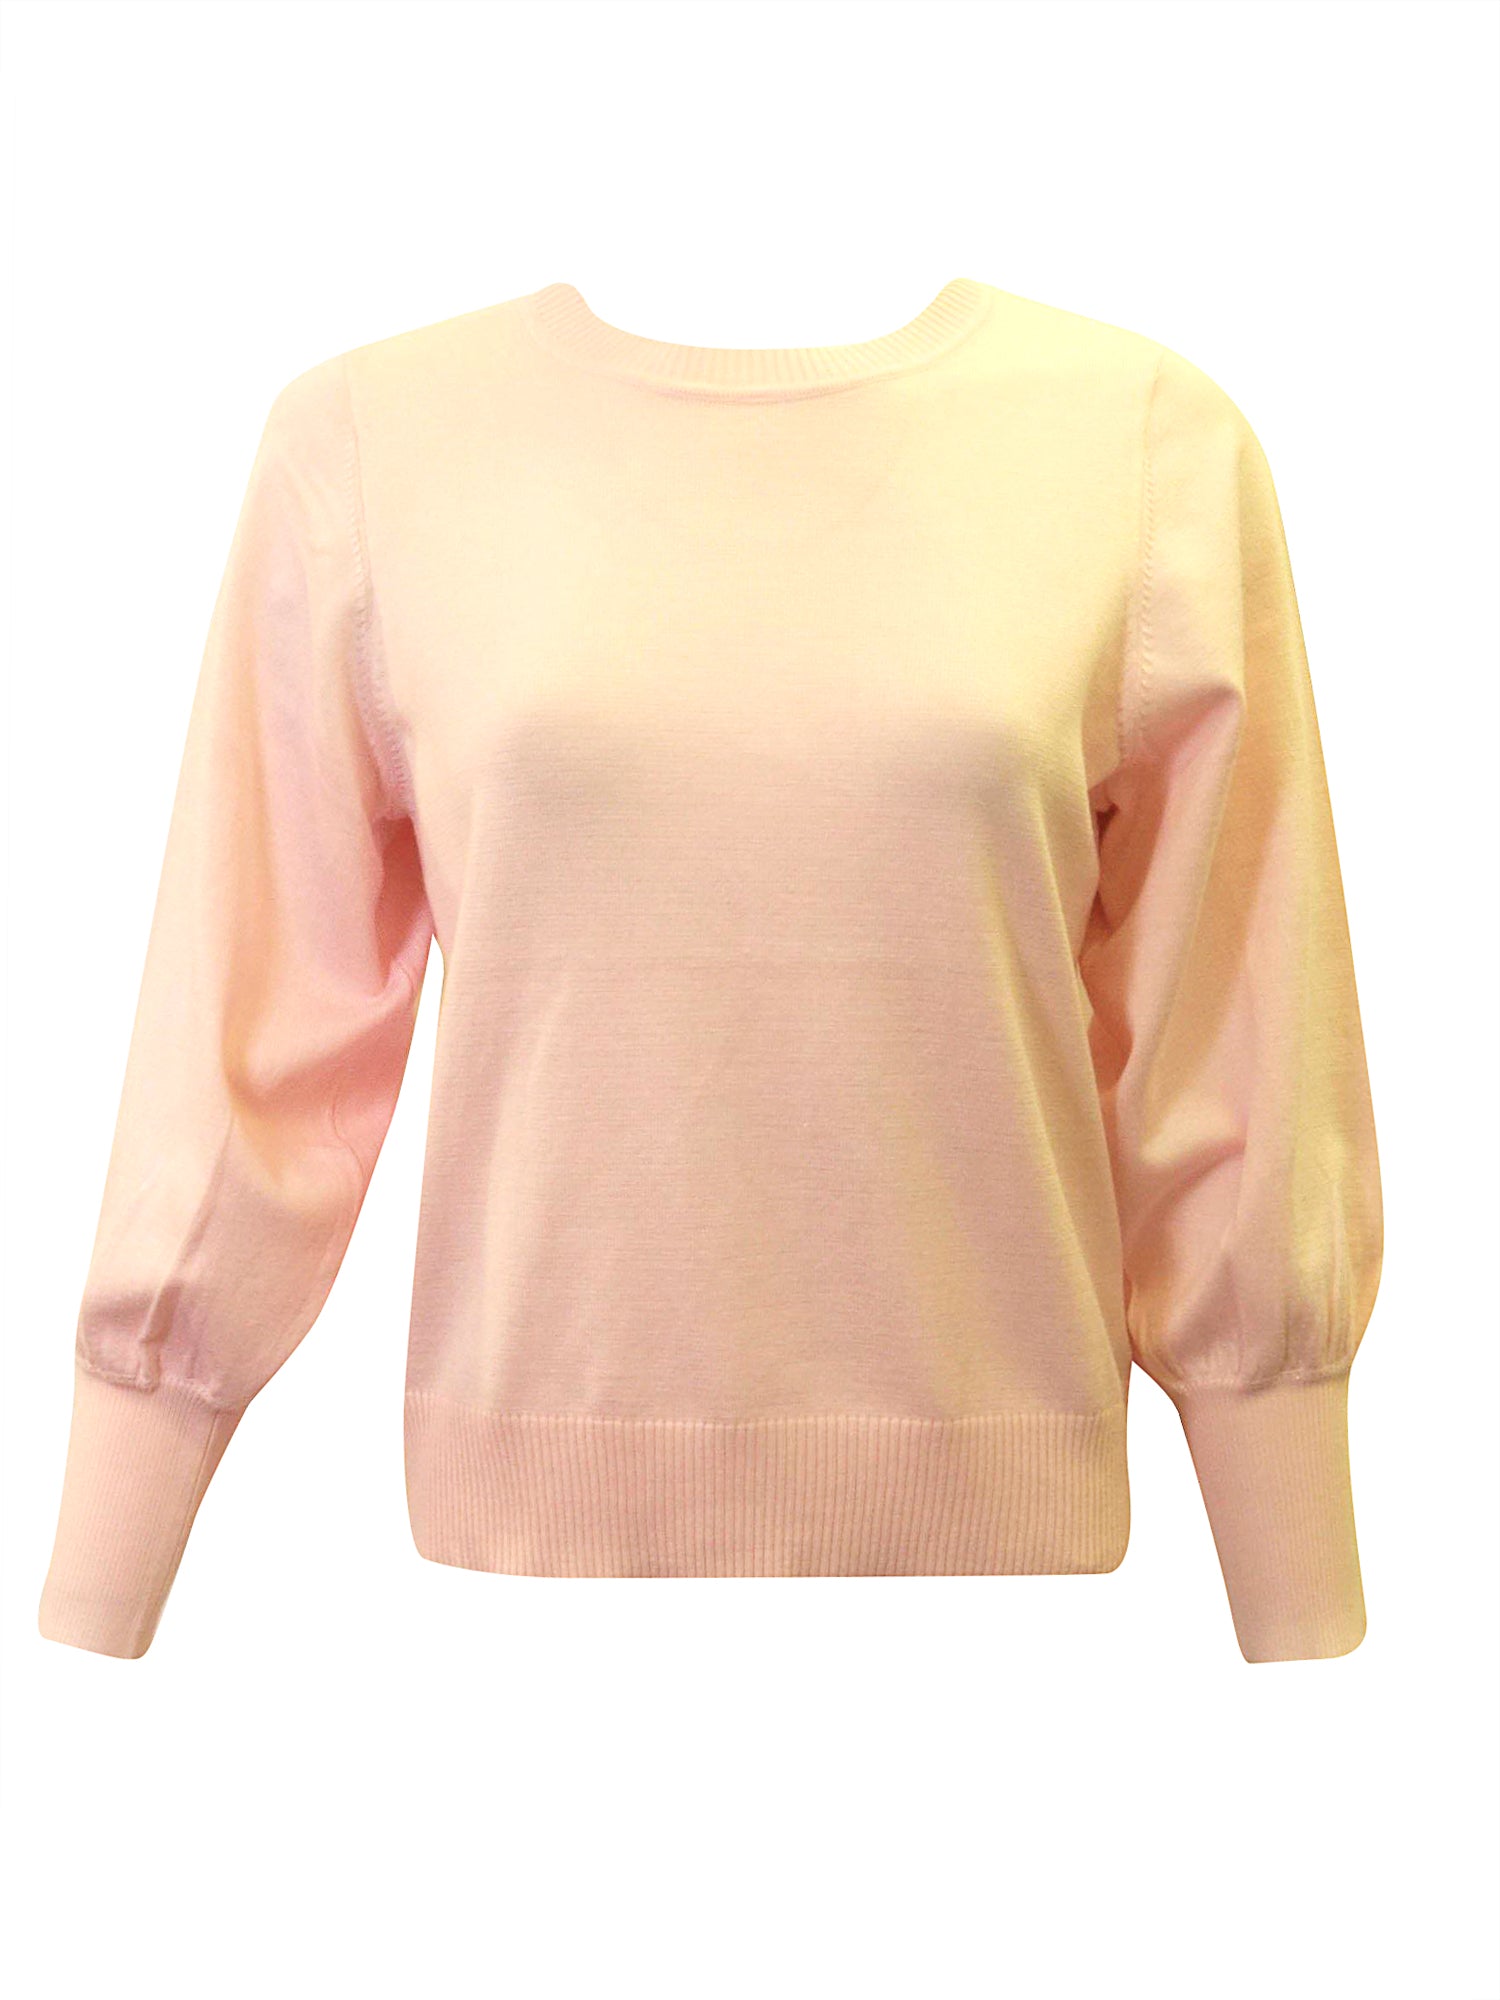 Fashion Puff Sleeve Sweater PinkOrchidFashion